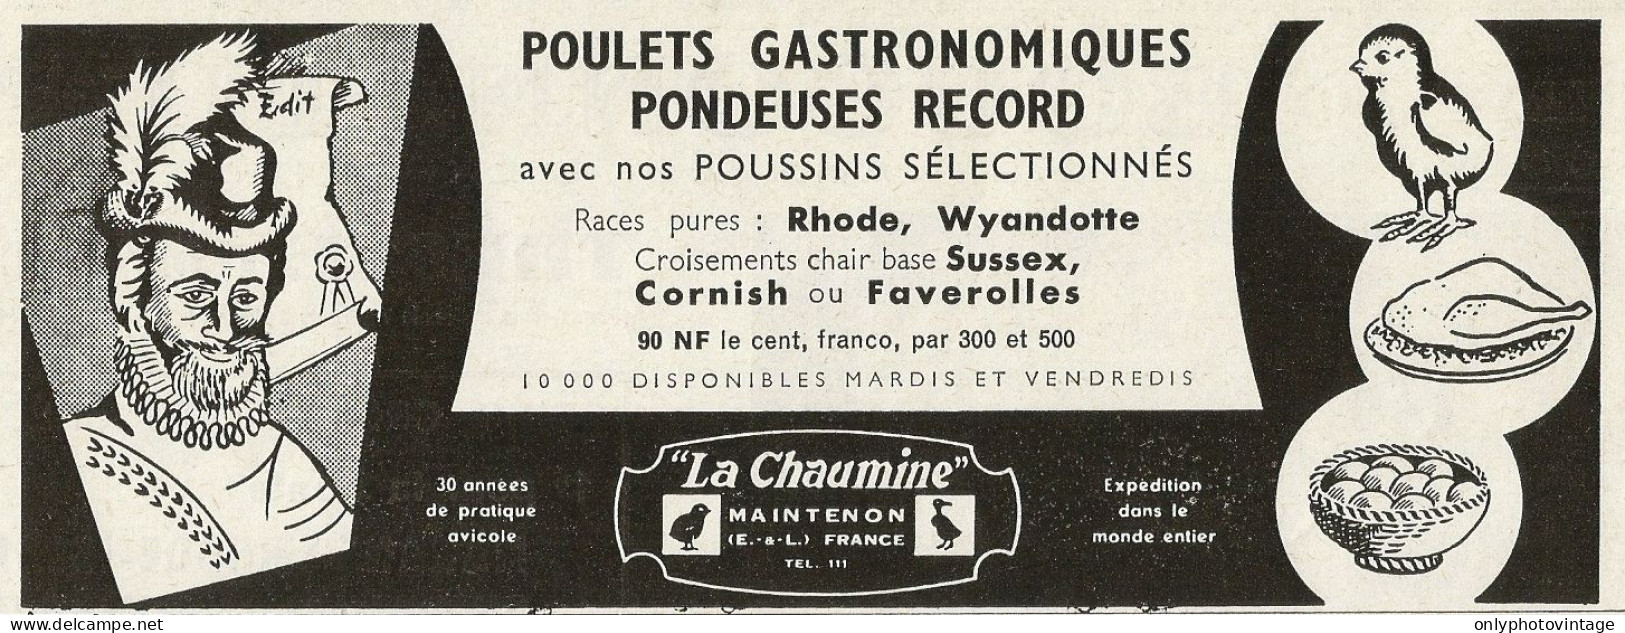 Poulets Gastronomiques Pondeuses Record LA CHAUMINE - Pubblicità 1961 - Advertising